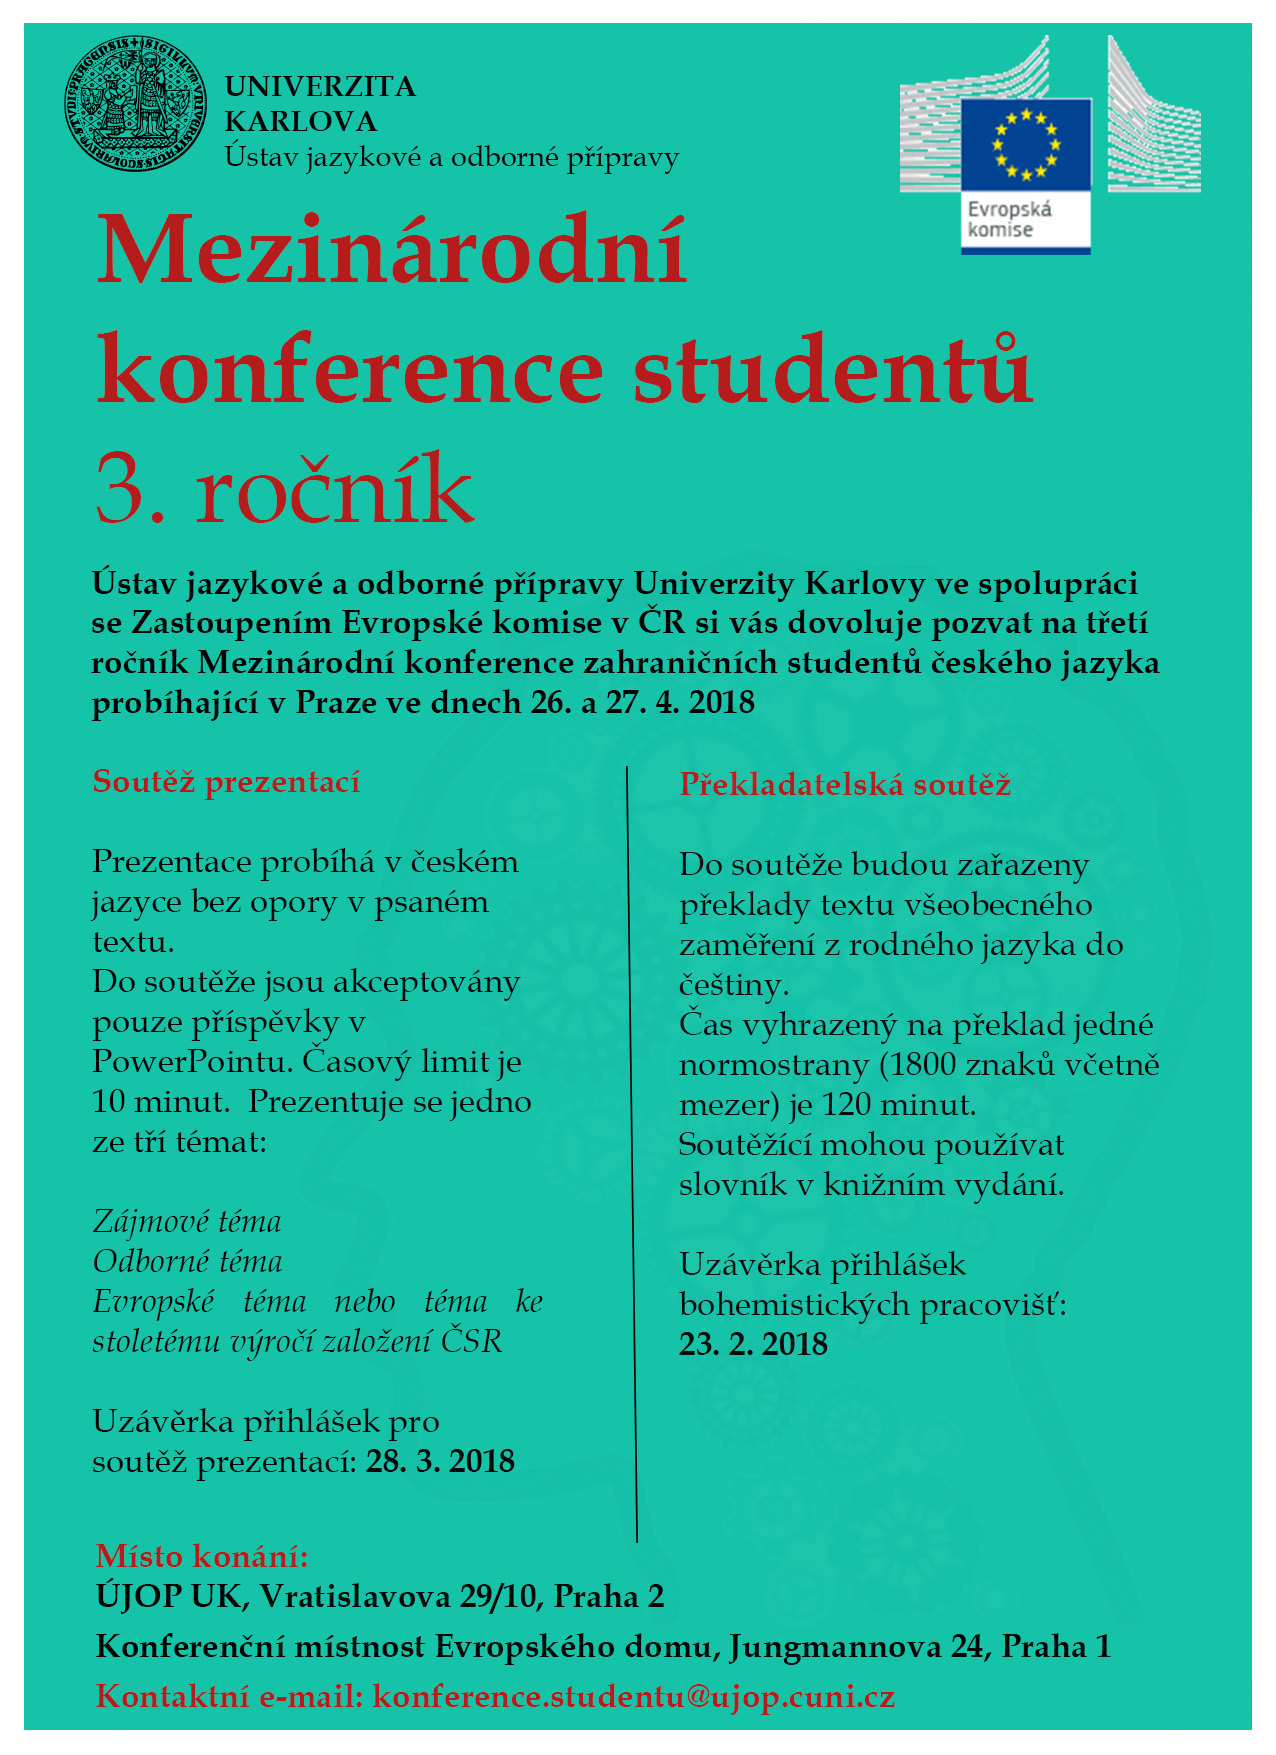 Mezinárodní konference studentů 3. ročník